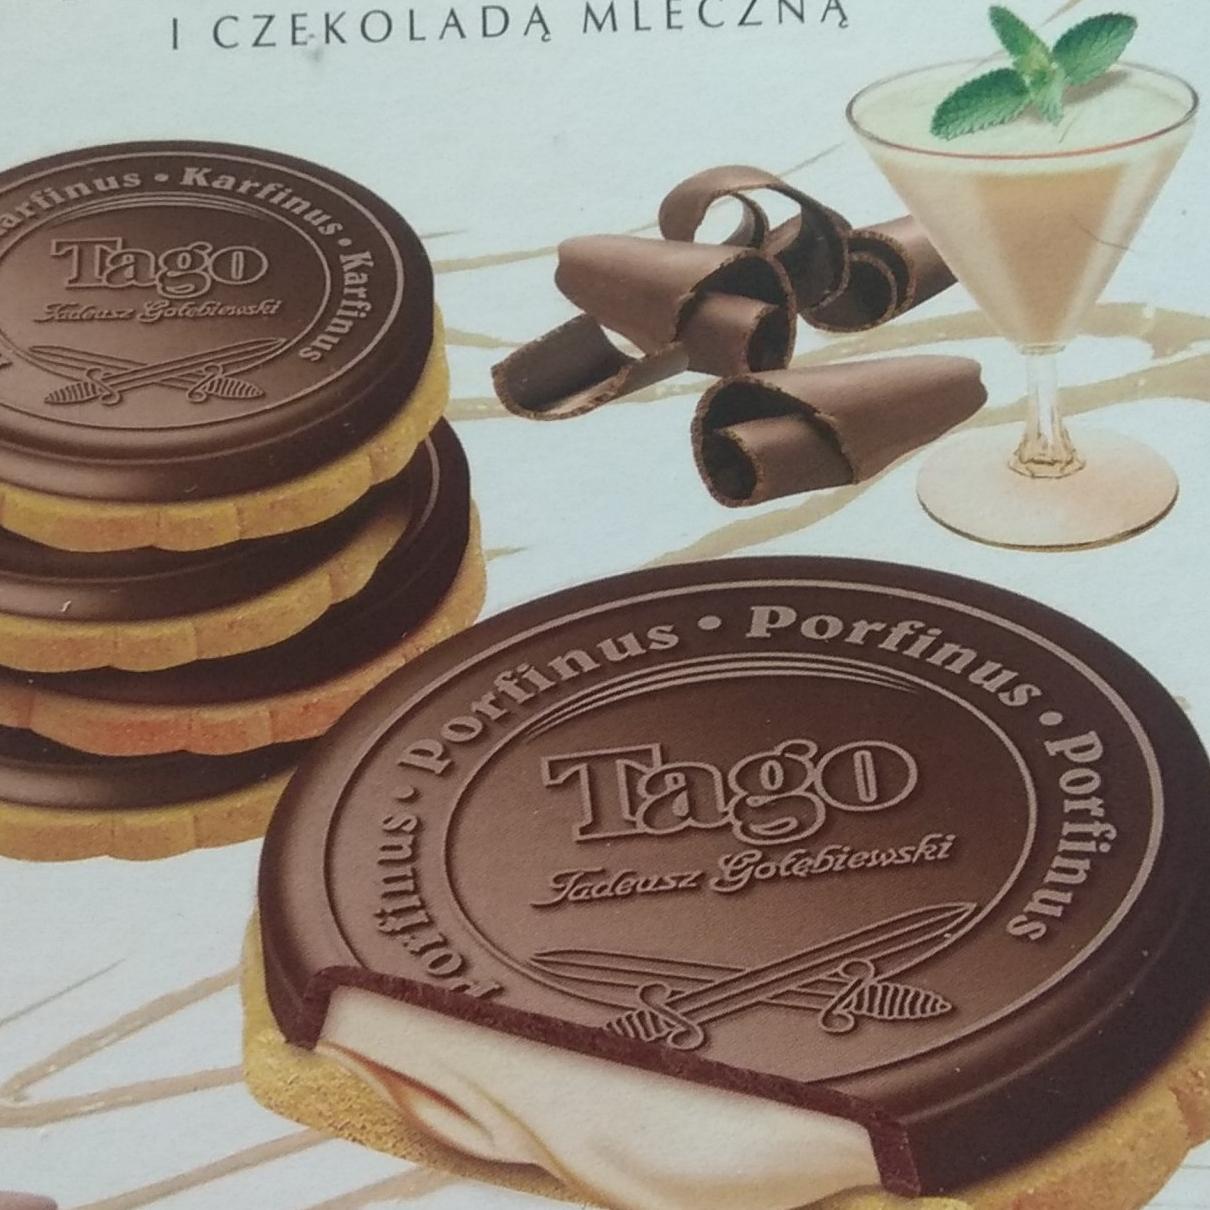 Fotografie - Kardynałki z kremem o smaku zabajone z czekoladą mleczną Tago